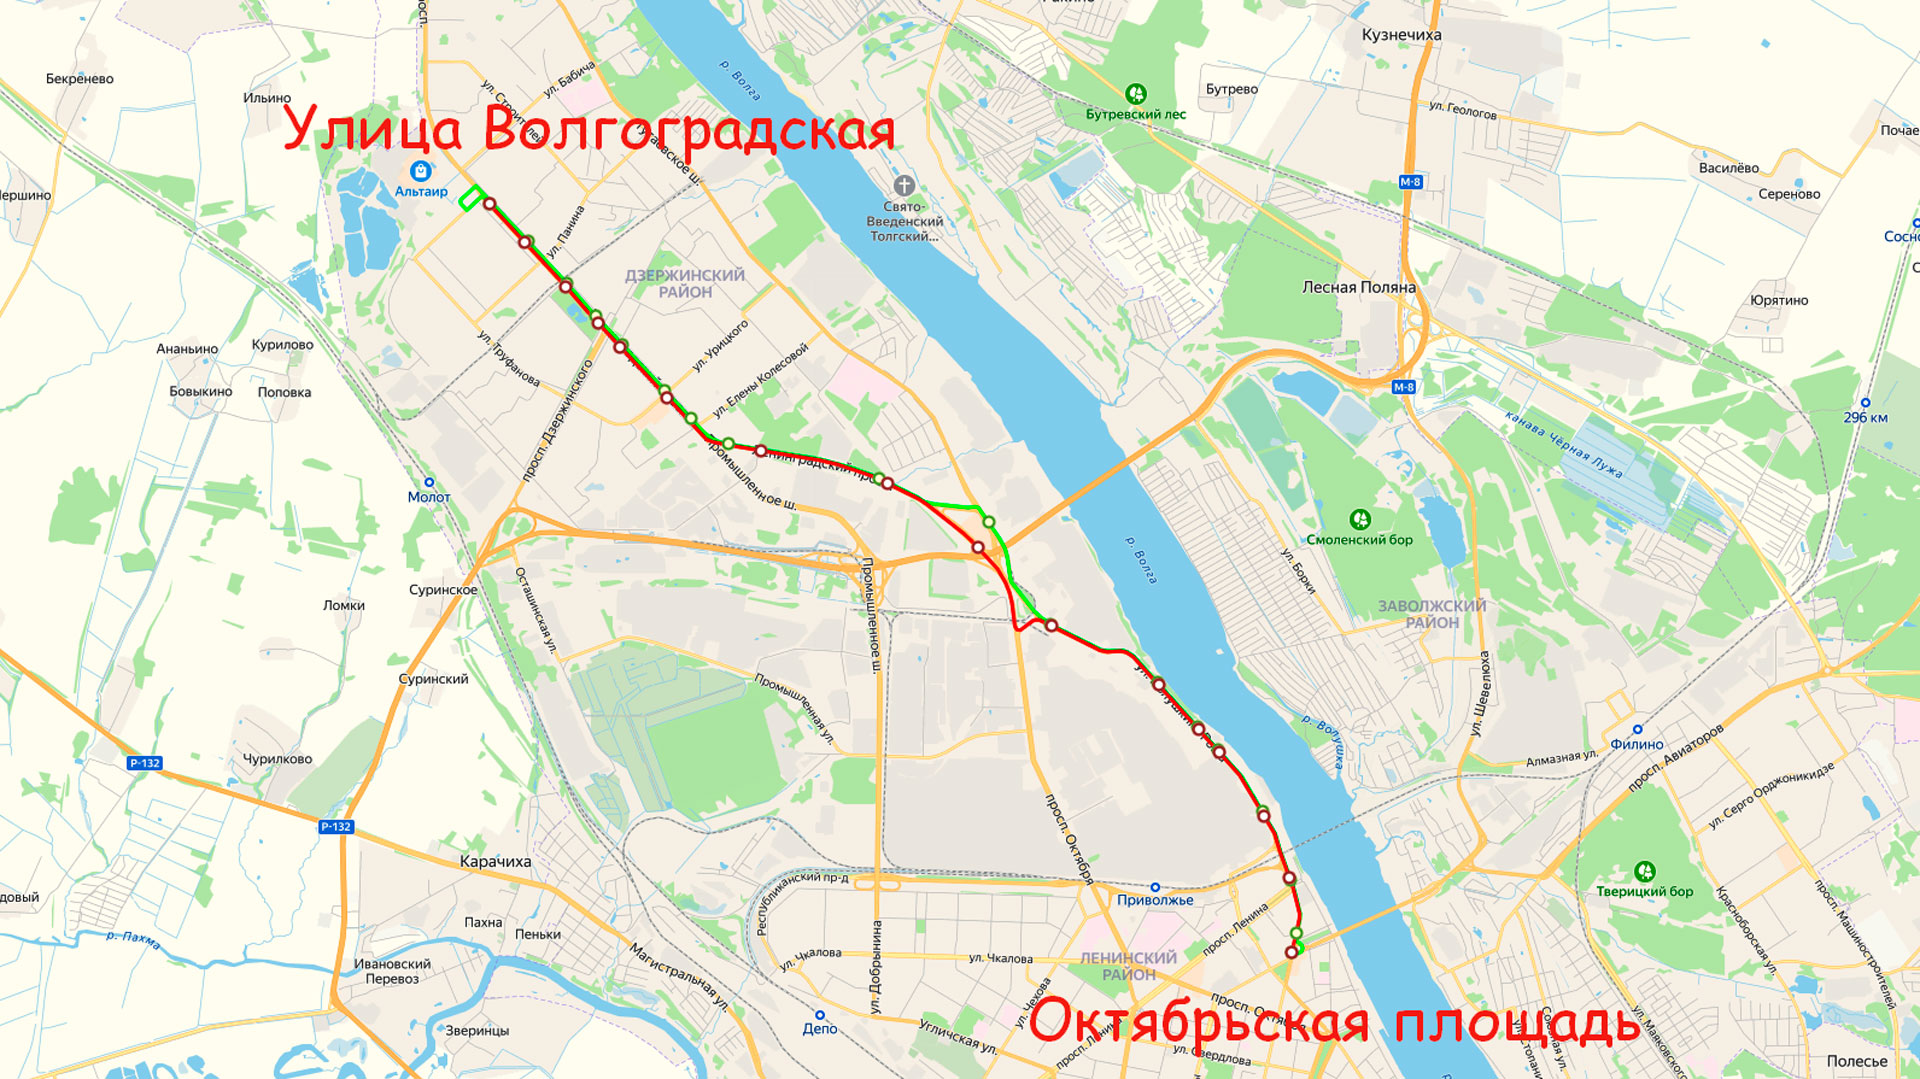 Маршрут троллейбуса 7 в Ярославле на карте.